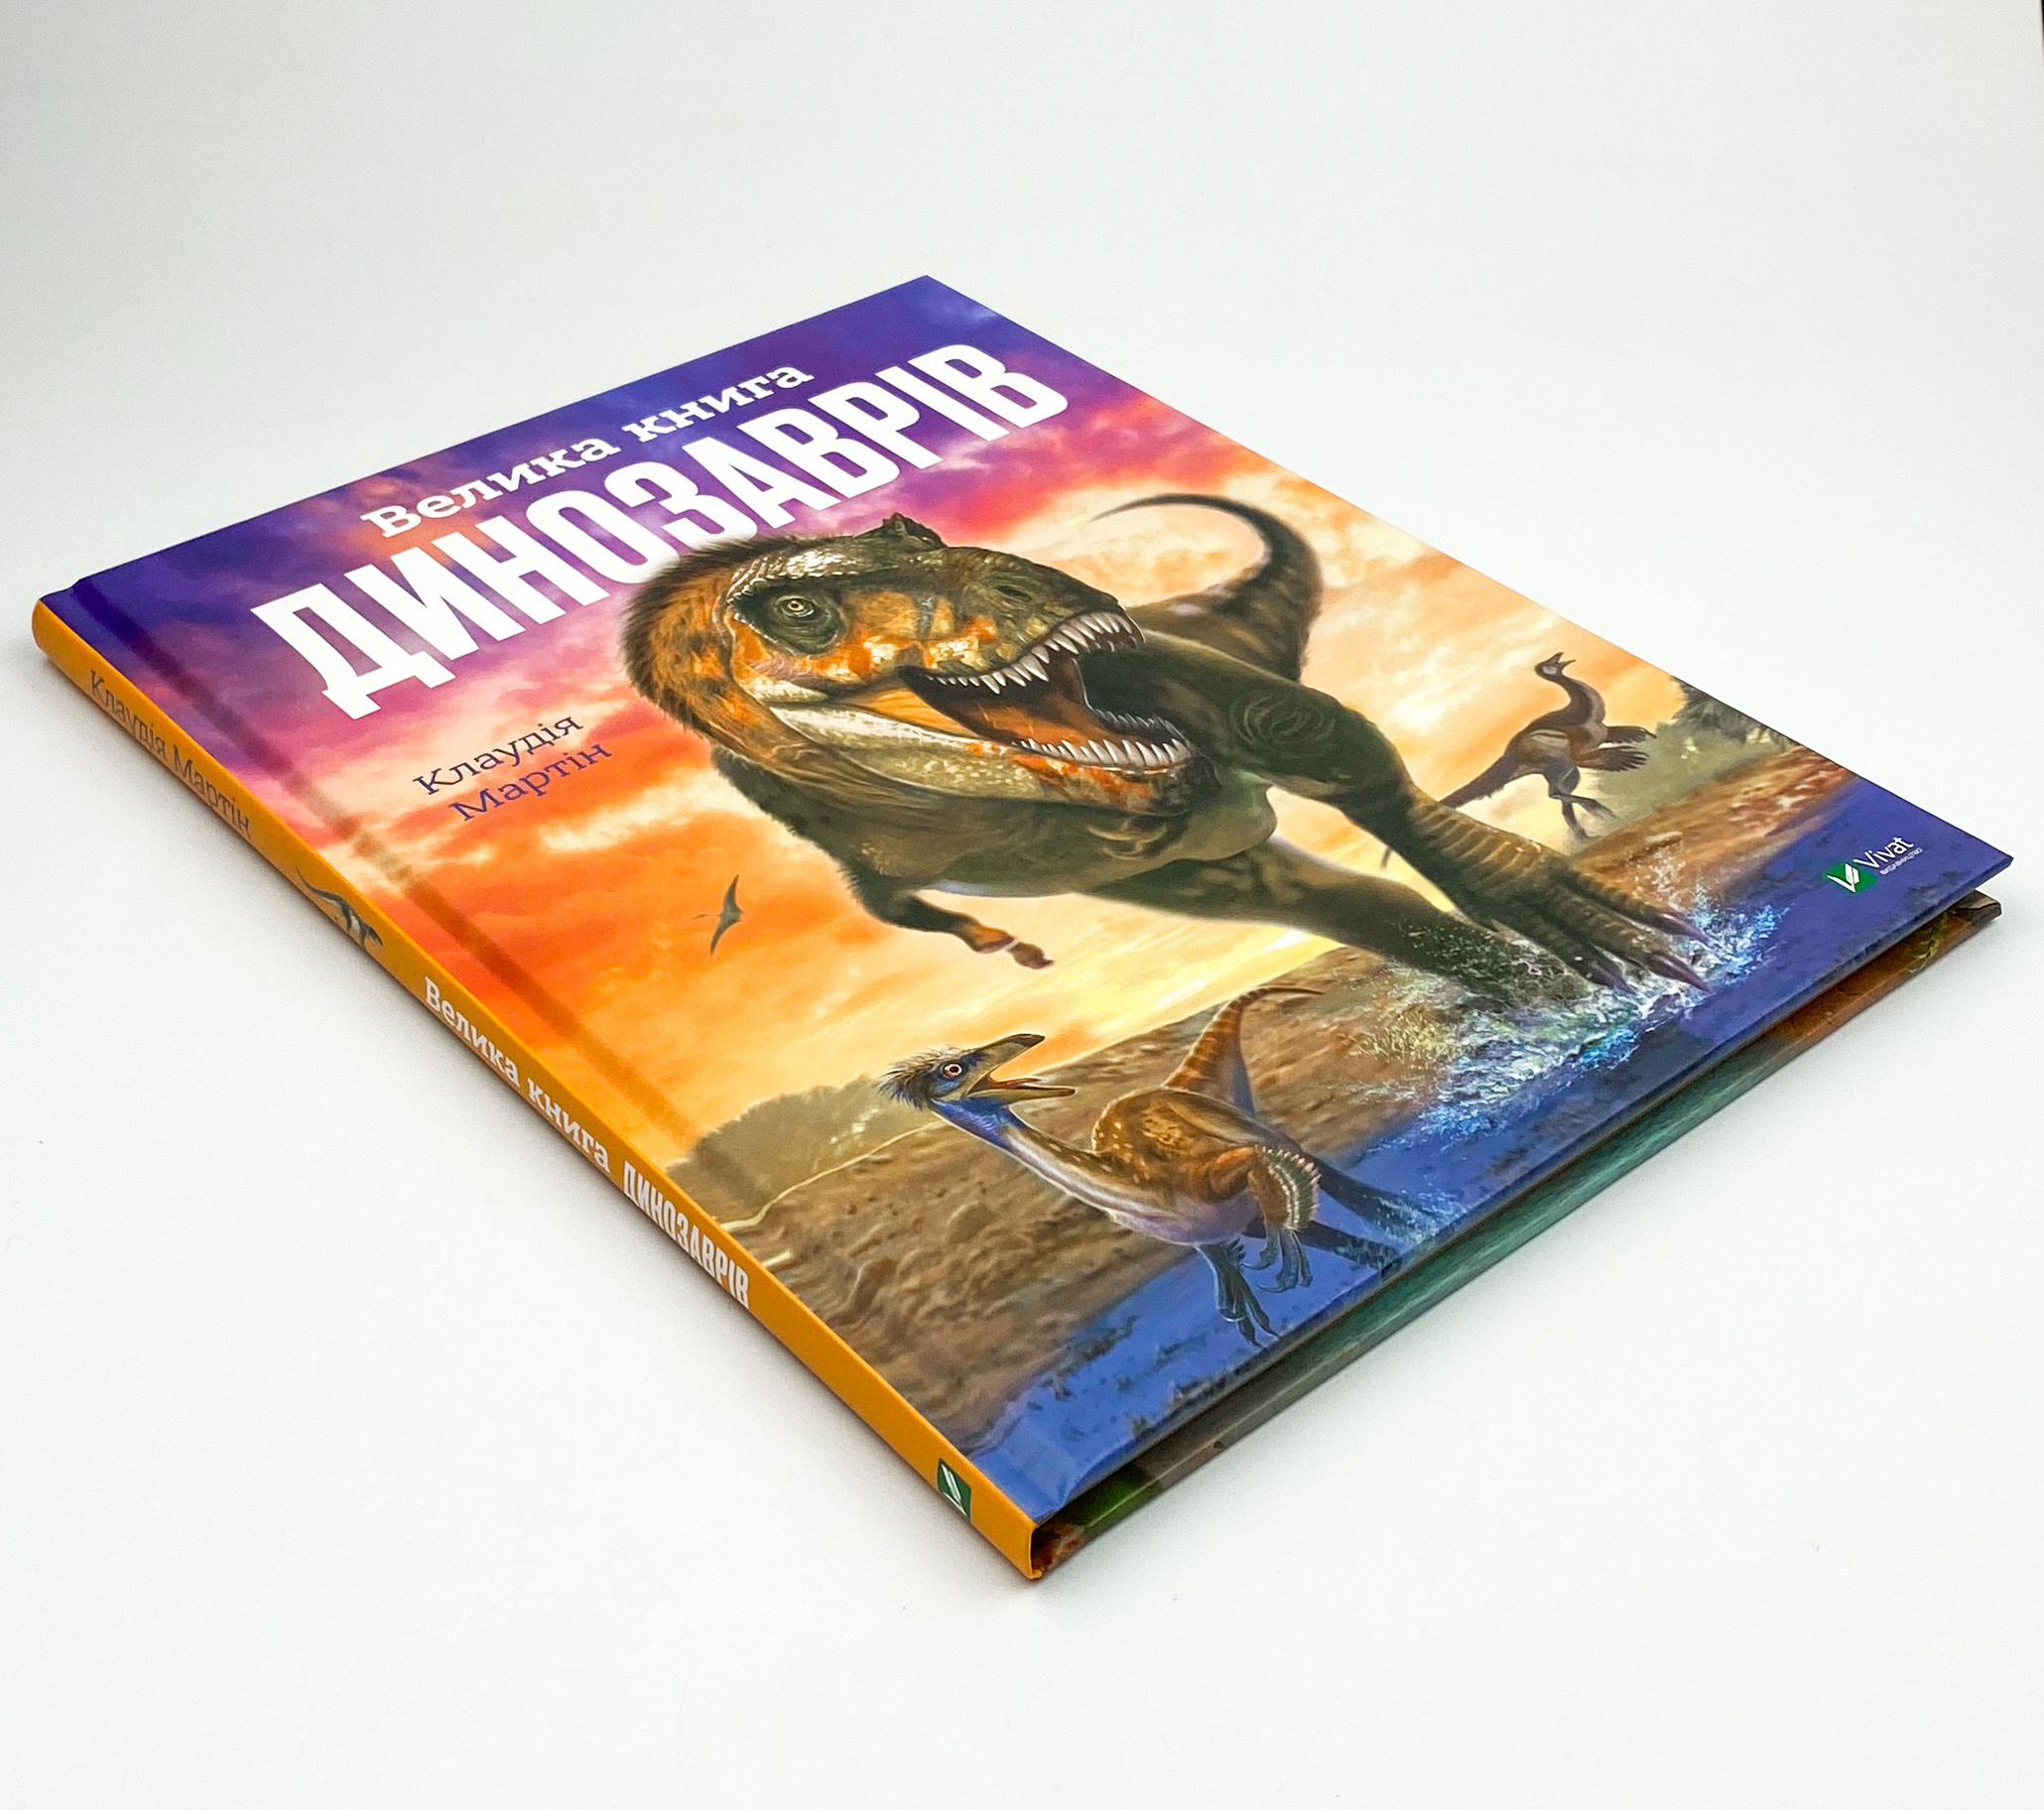 Велика книга динозаврів. Автор — Мартін Клаудія. 